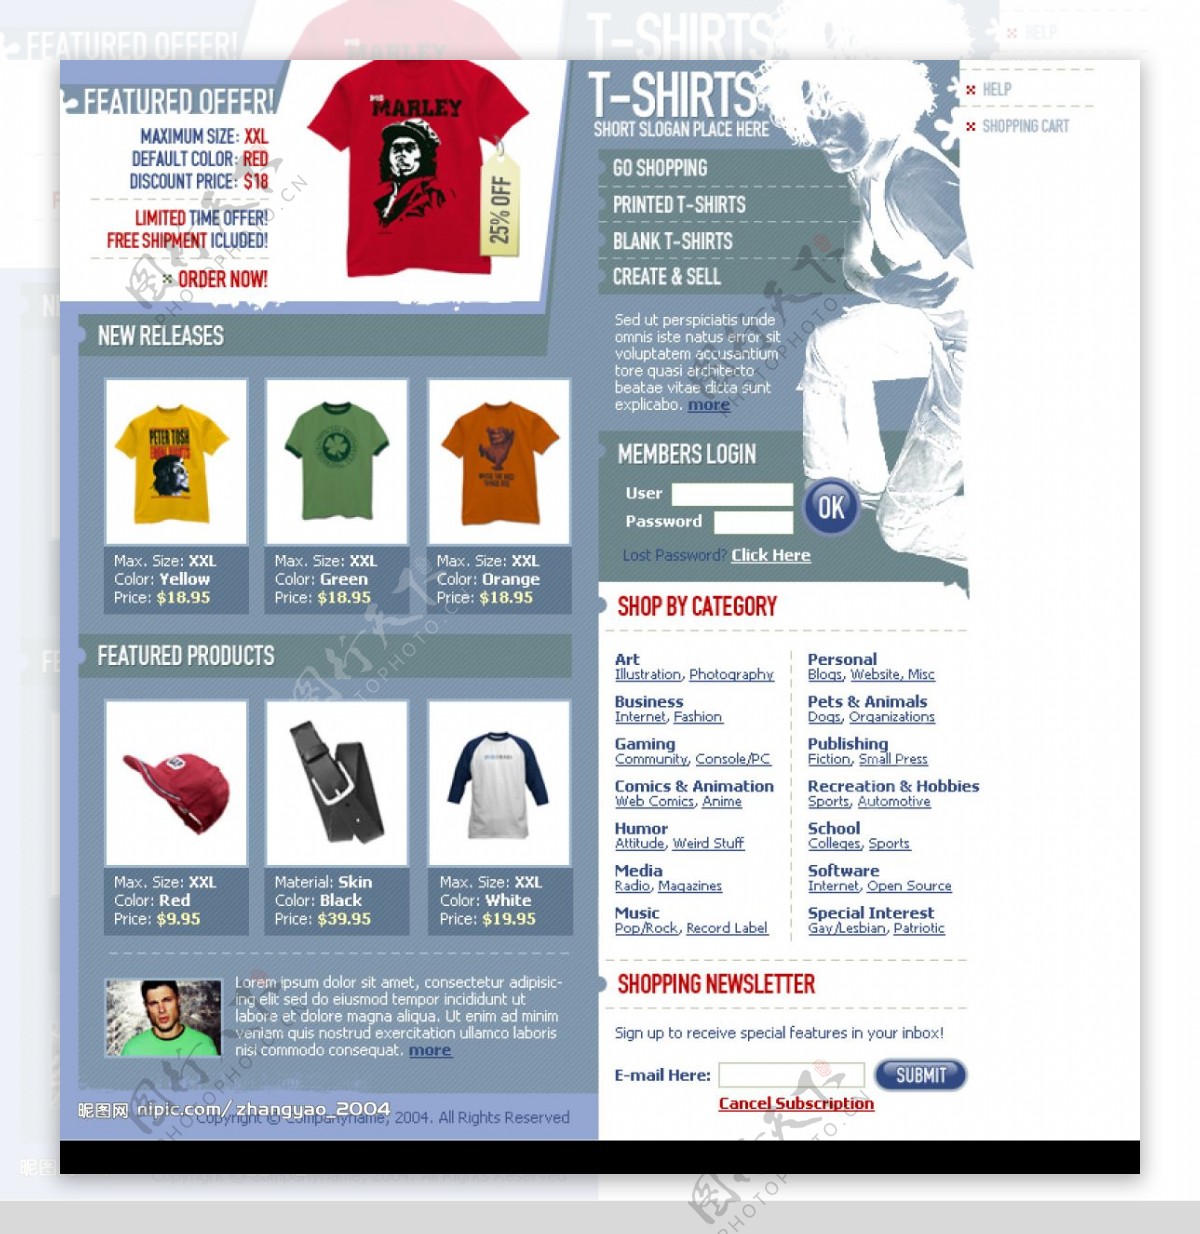 欧美时尚男装购物网站PSD模版图片